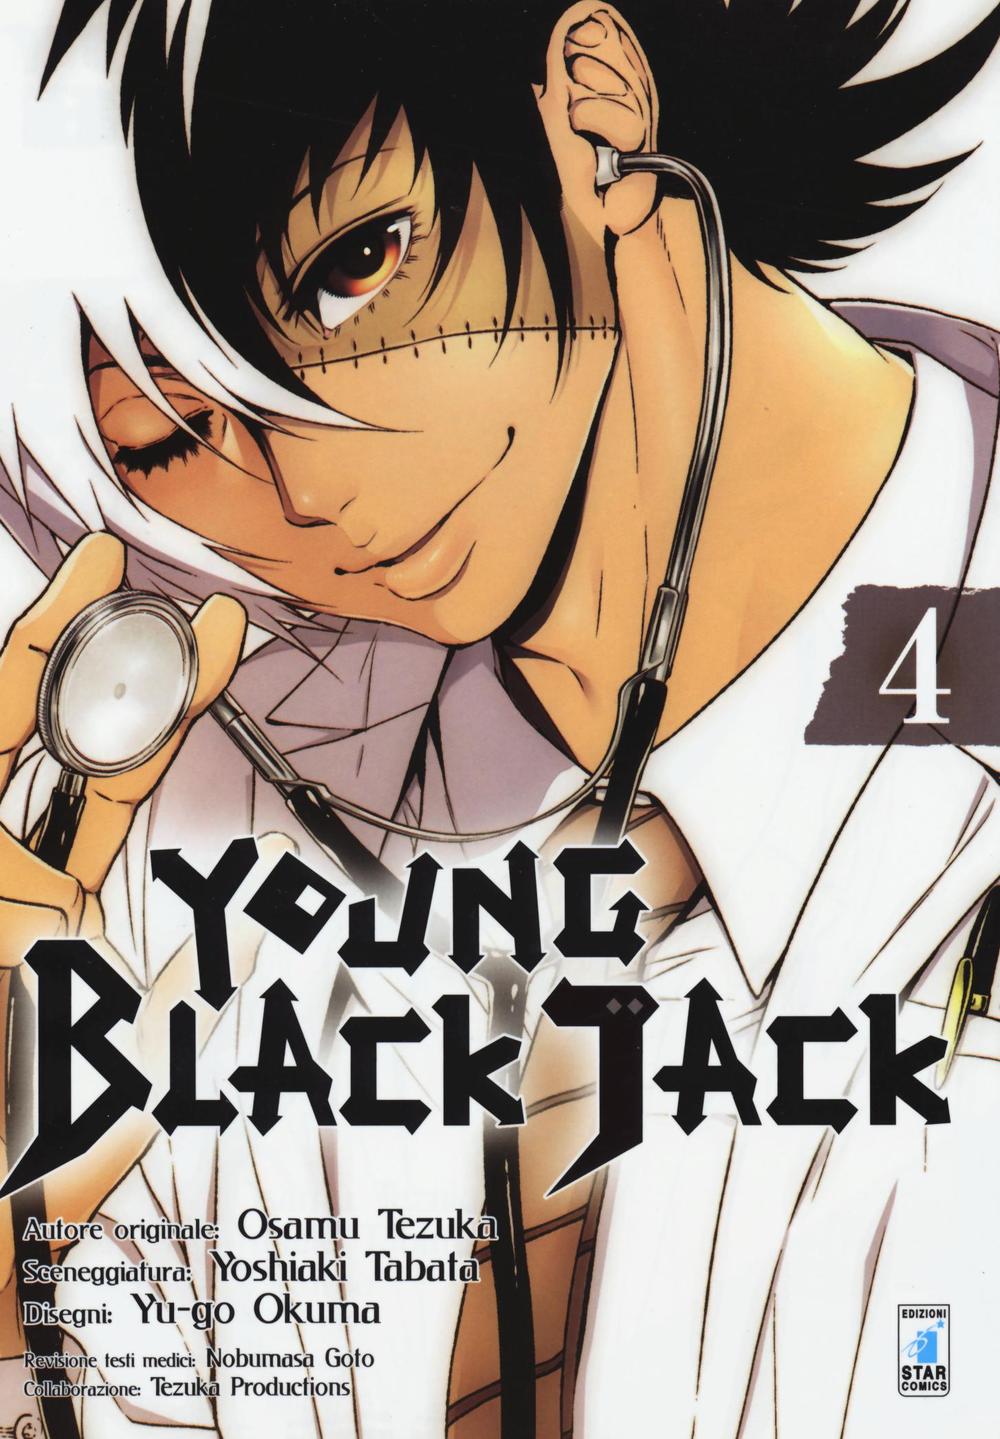 Young Black Jack. Vol. 4